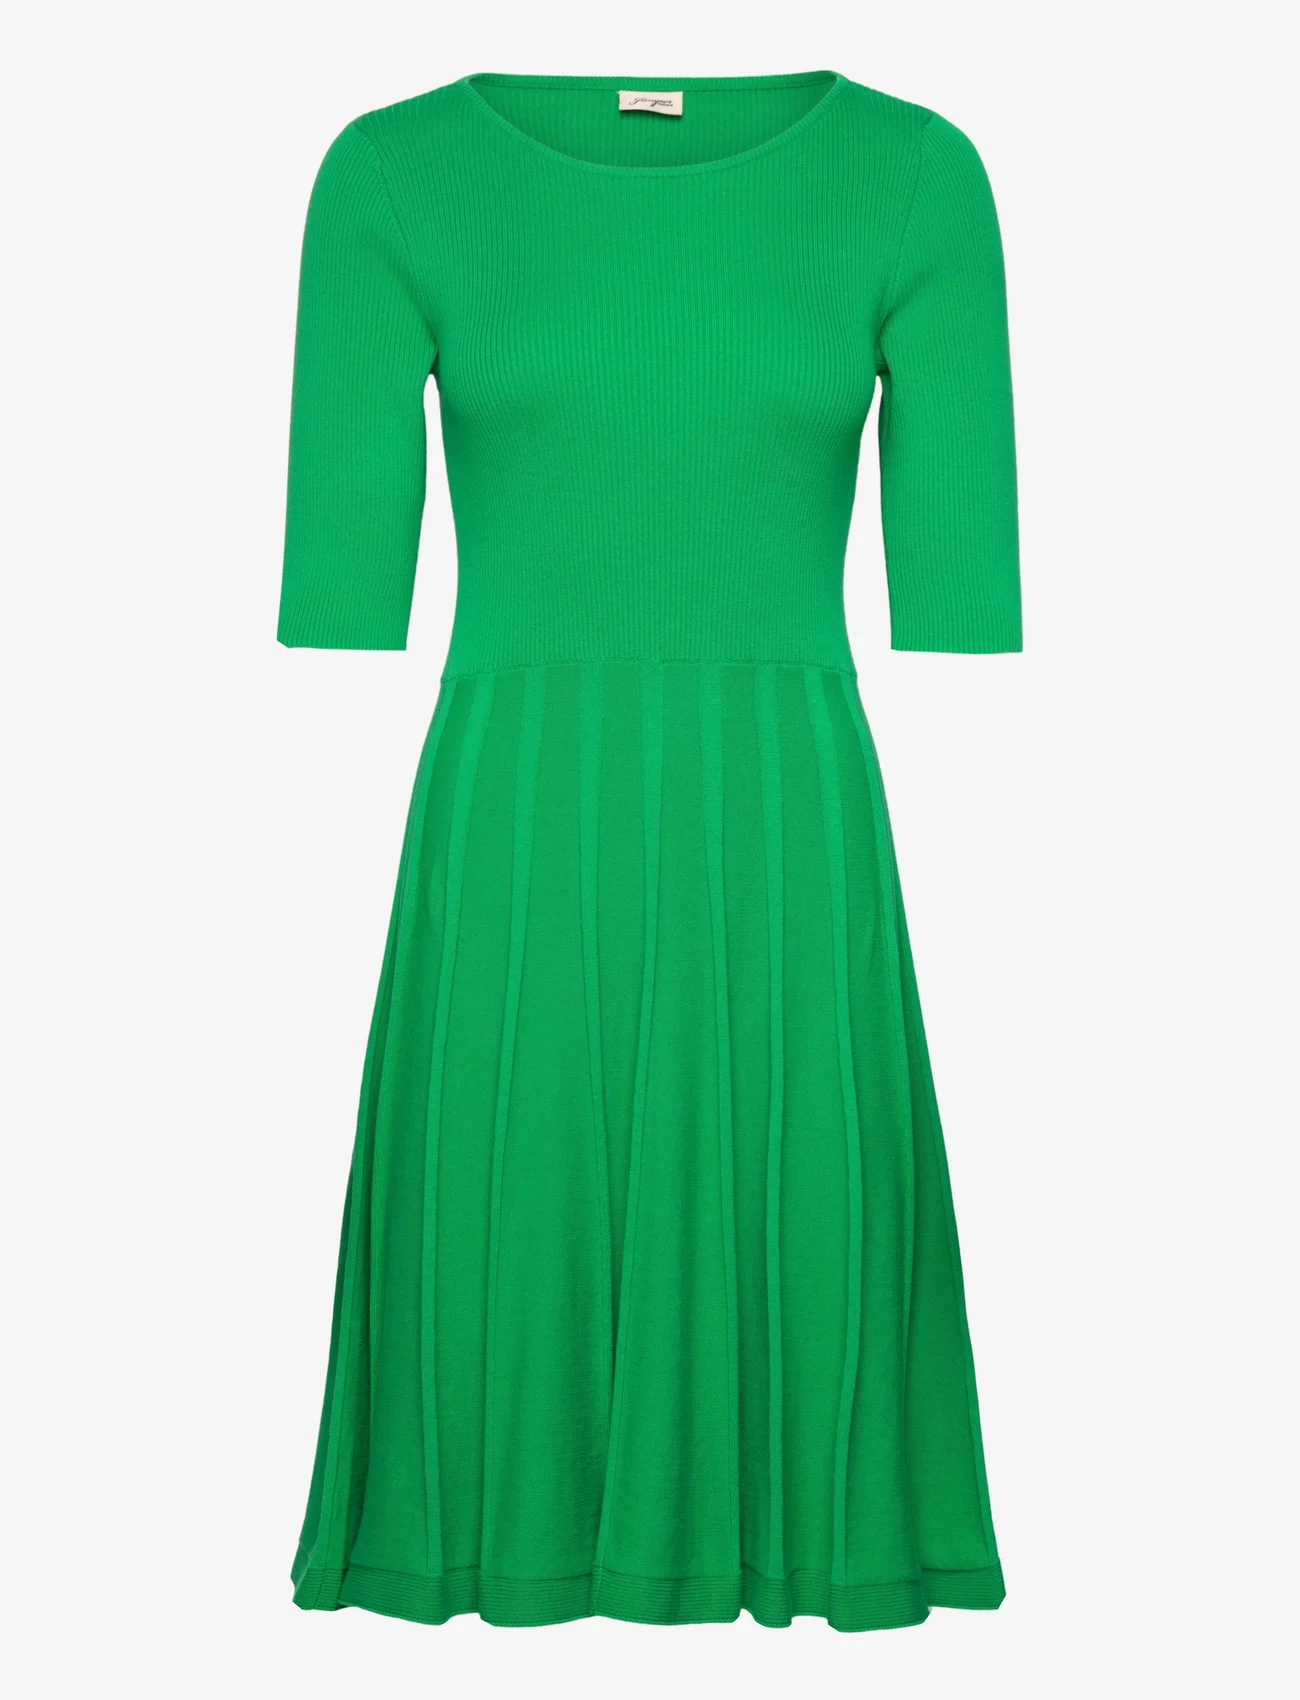 Jumperfabriken - Milly Dress - knitted dresses - green - 0